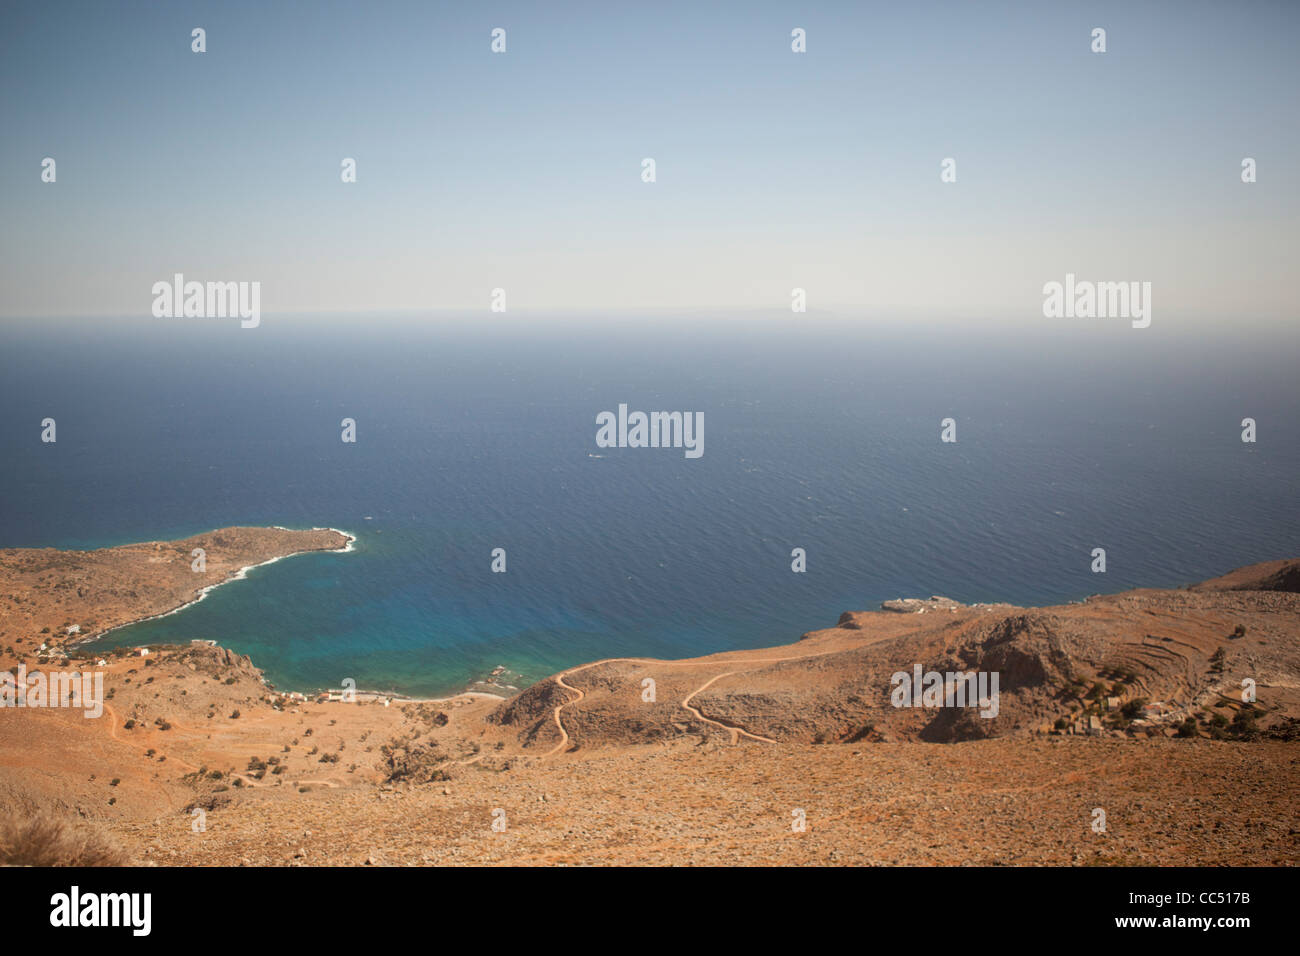 Vue sur la mer de Libye. Photo prise de l'île de Crète en Grèce. Banque D'Images